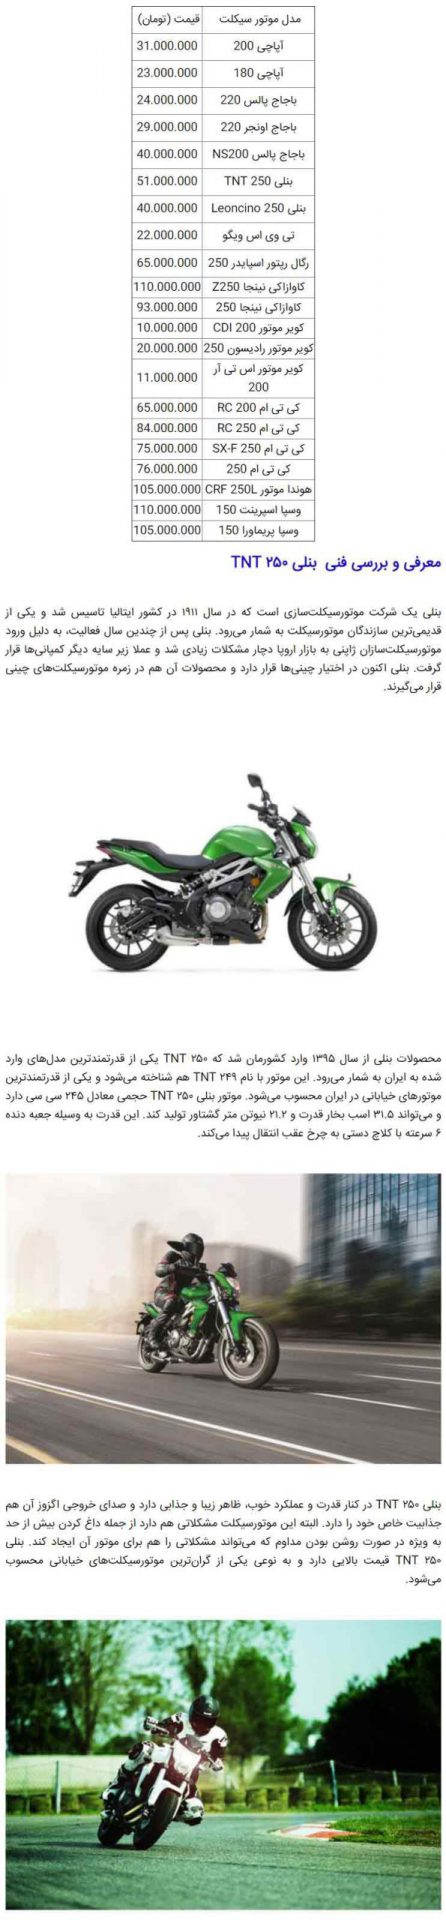 قیمت روز انواع موتورسیکلت 3 خرداد +معرفی و بررسی فنی بنلی TNT 250